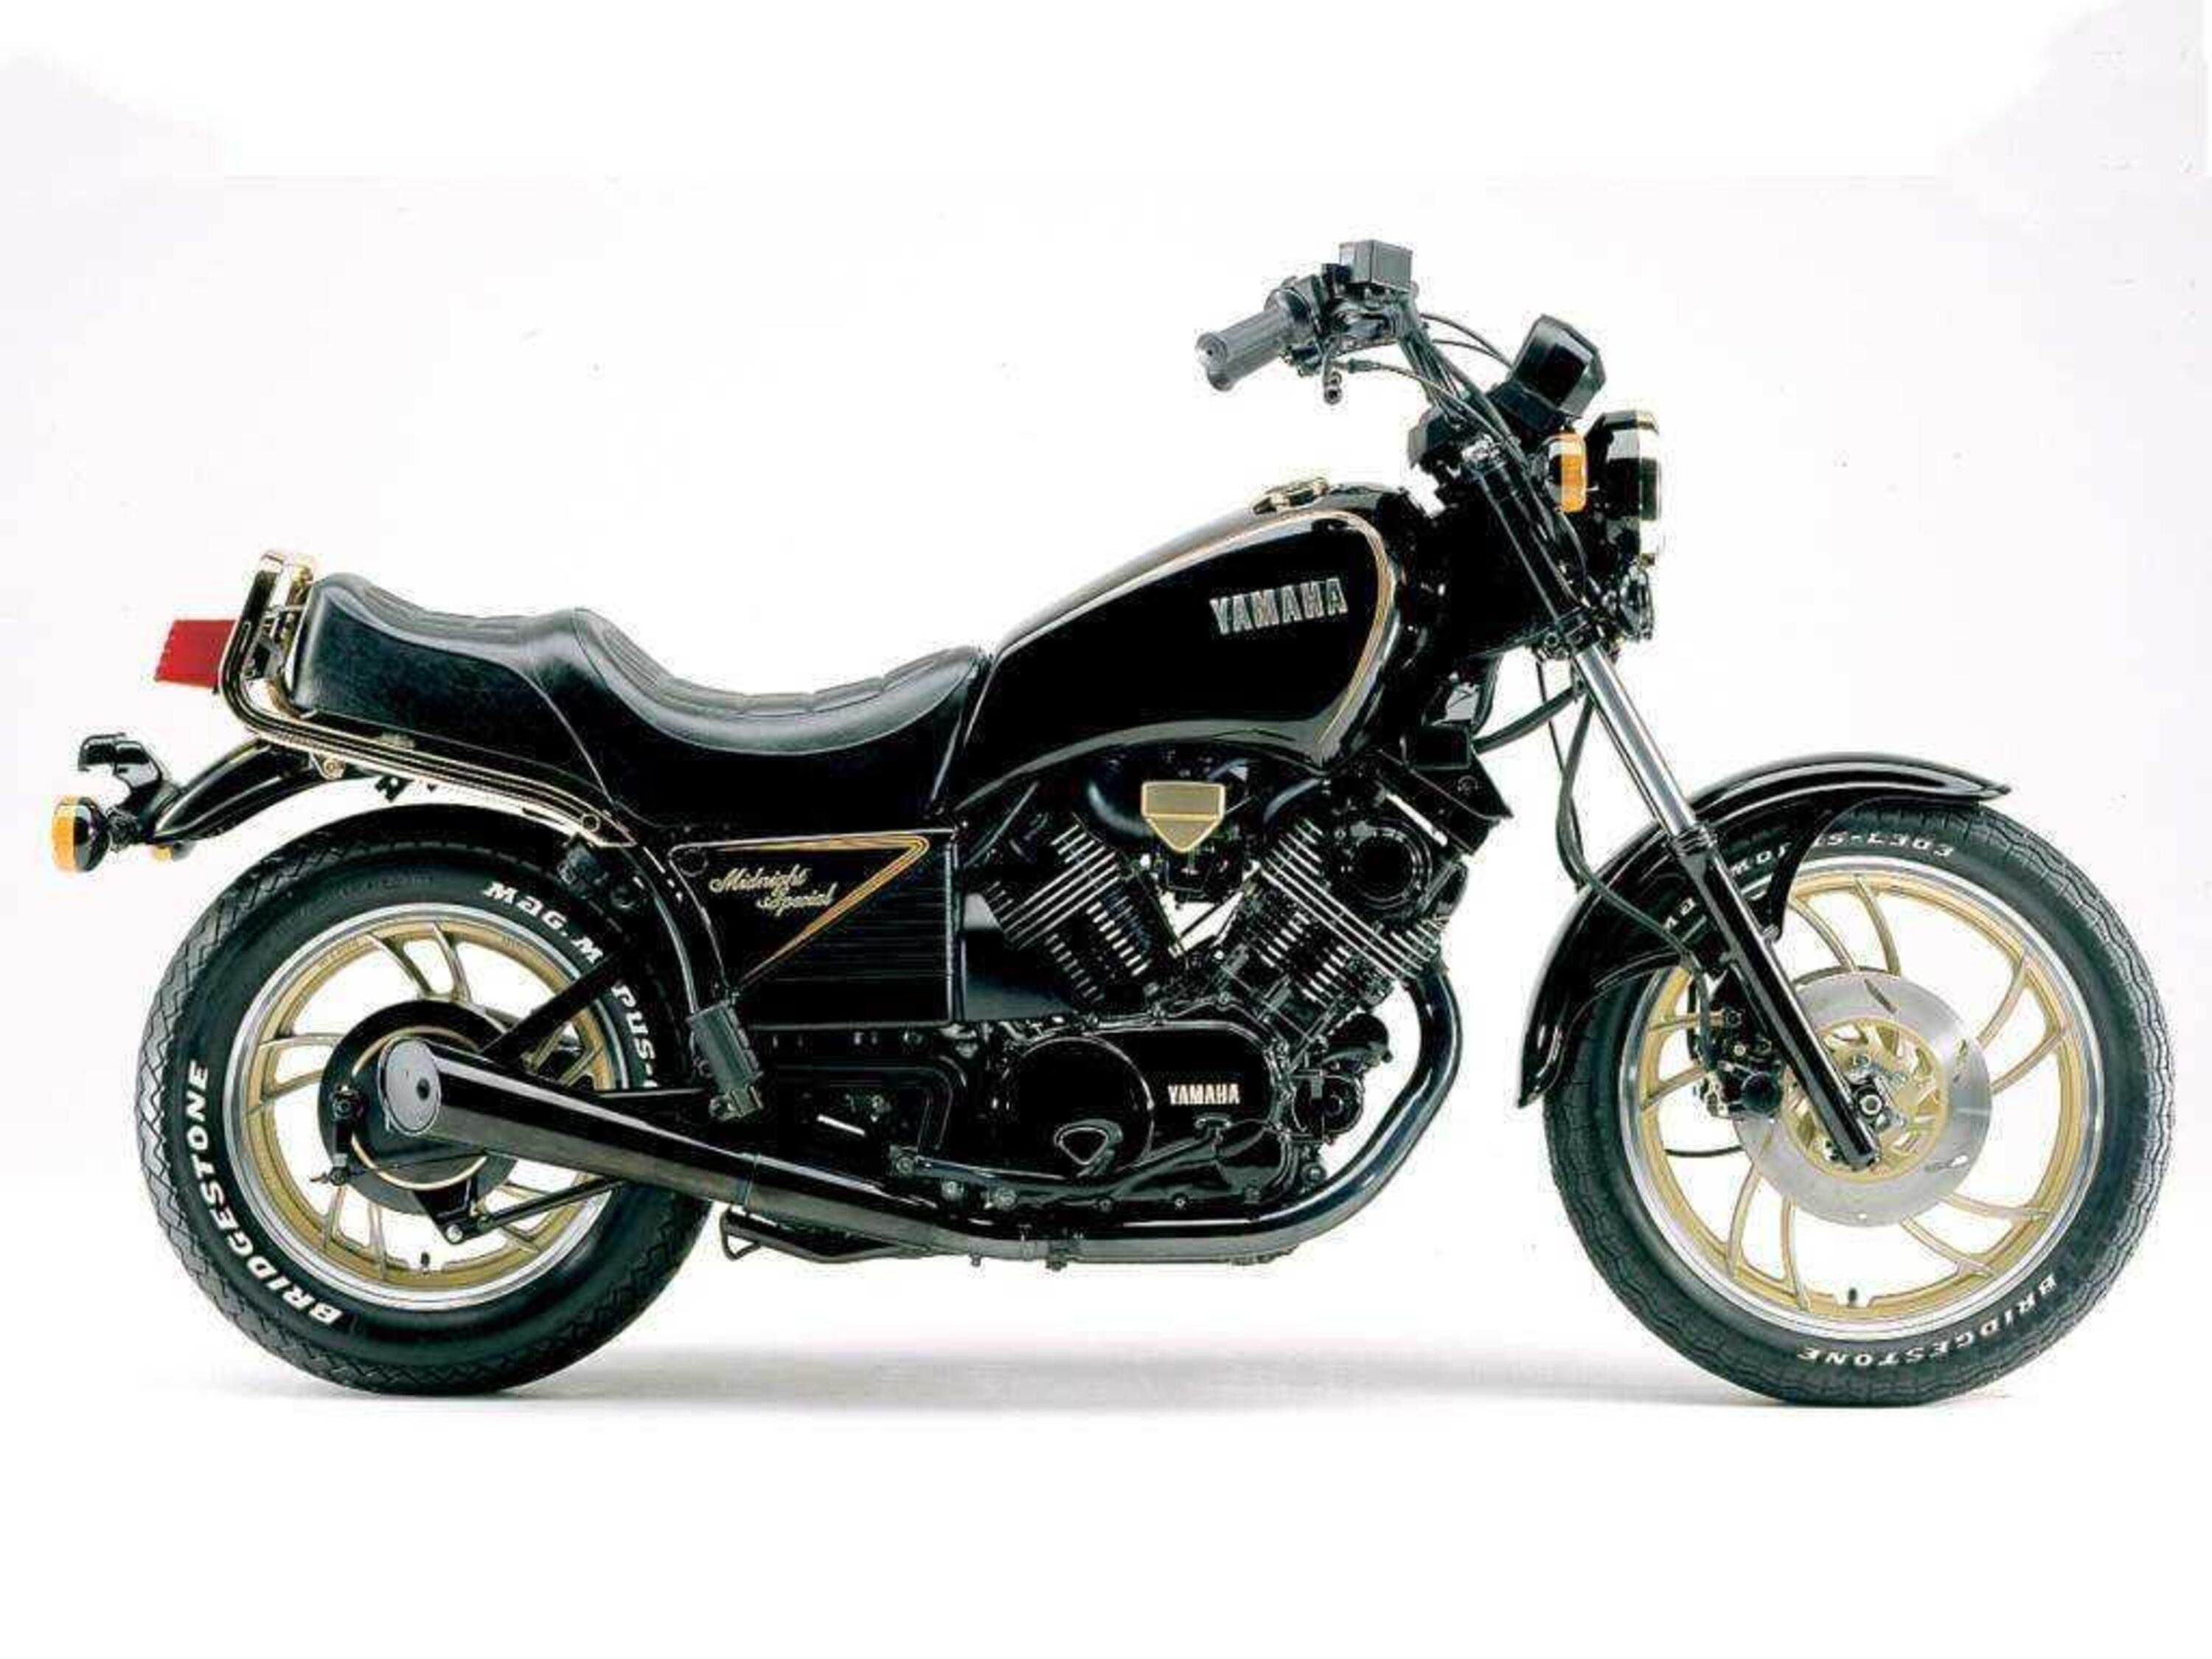 Yamaha XV 1000 XV 1000 Virago (1989 - 90)